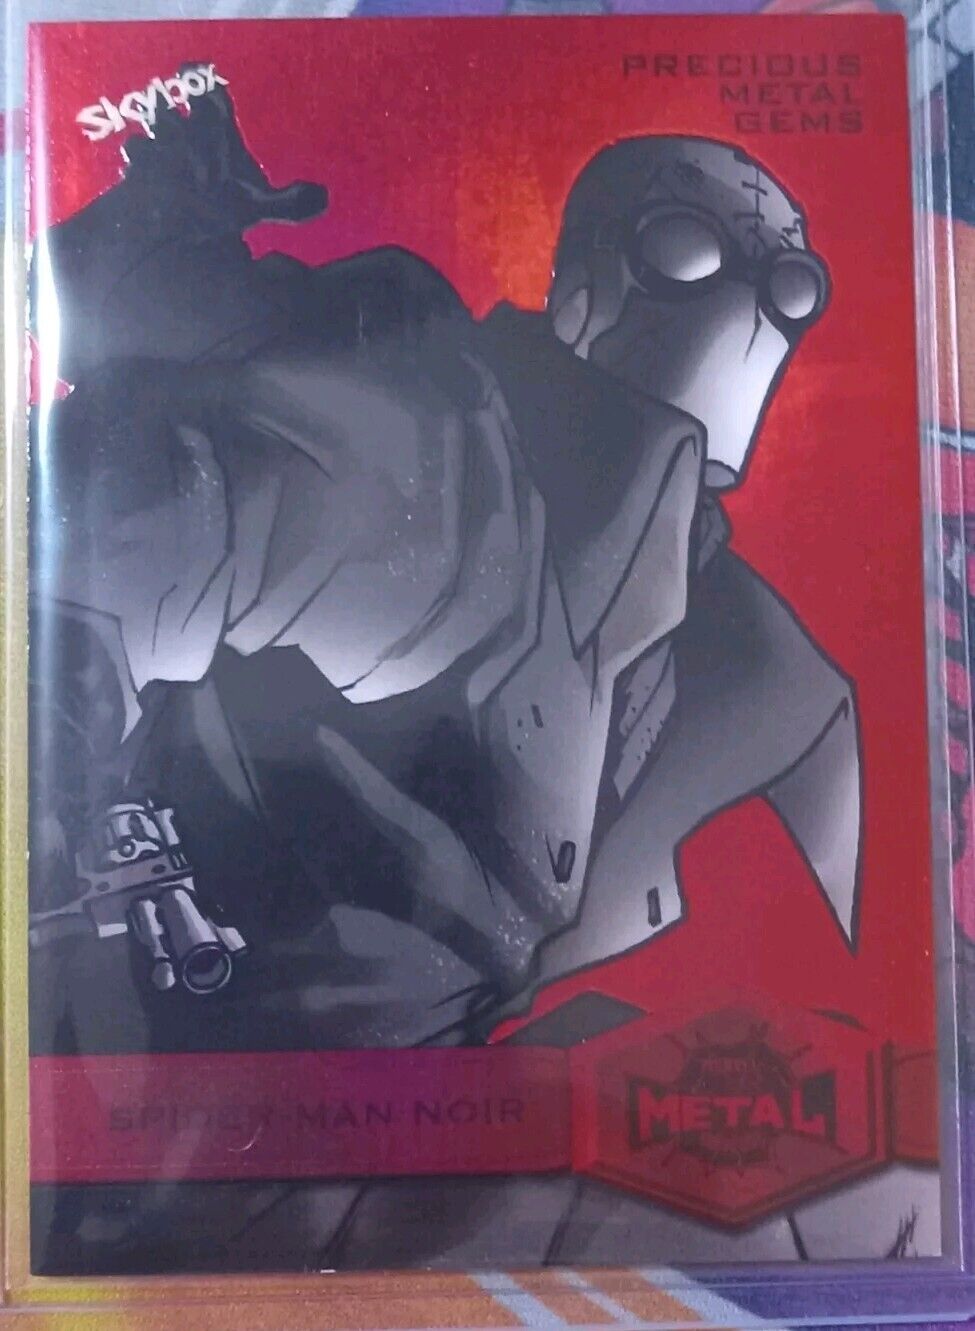 Spider-man Noir /100 Red PMG Spider-Man Metal Universe Card